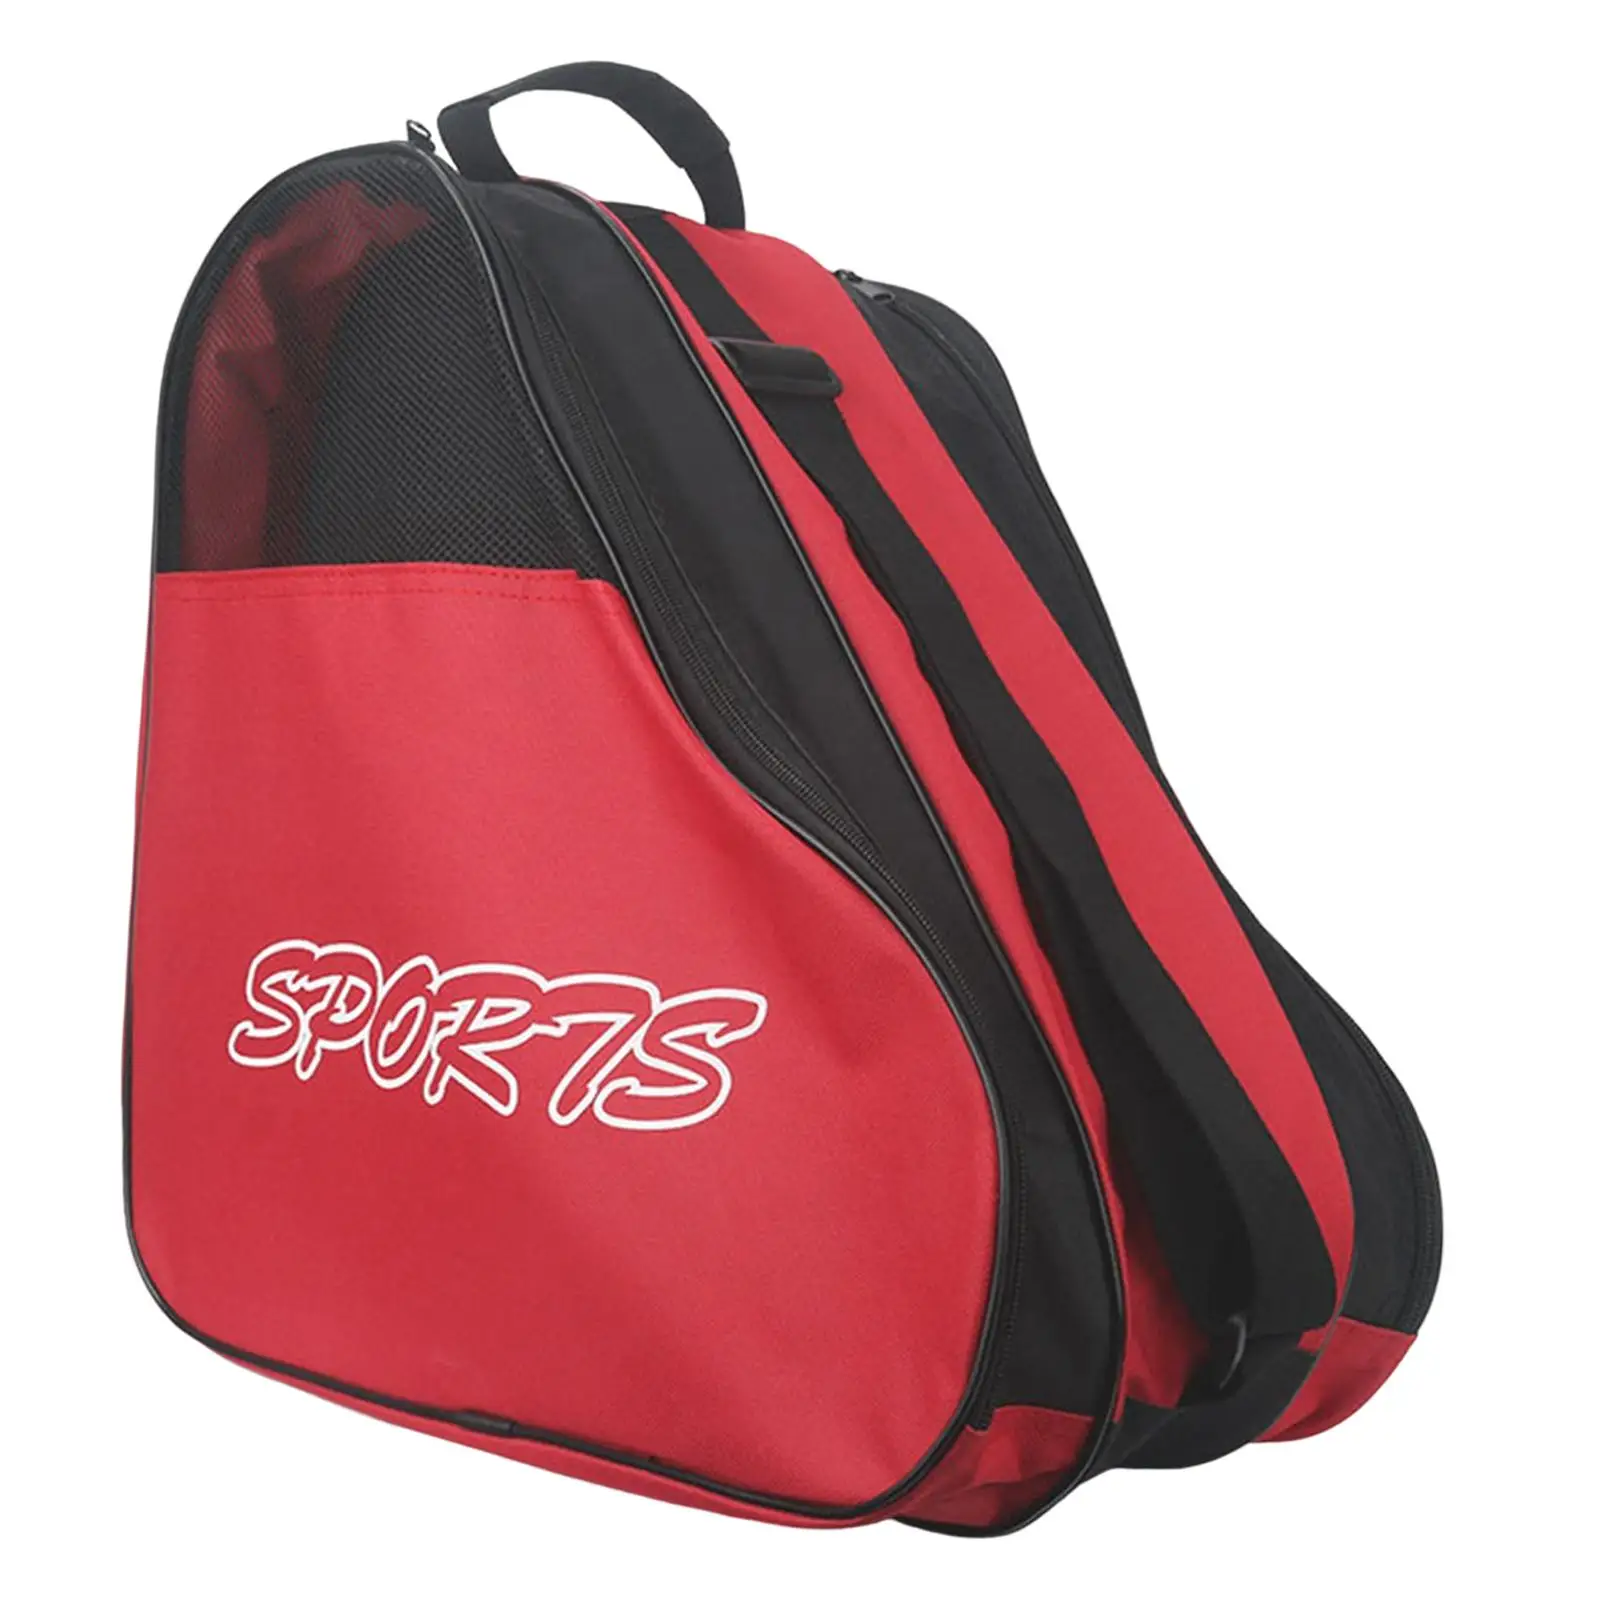 Skating Shoes Bag Carrier Bag Case Adjustable Shoulder Strap Breathable Backpack for Sports Kids Inline Skate Women Men